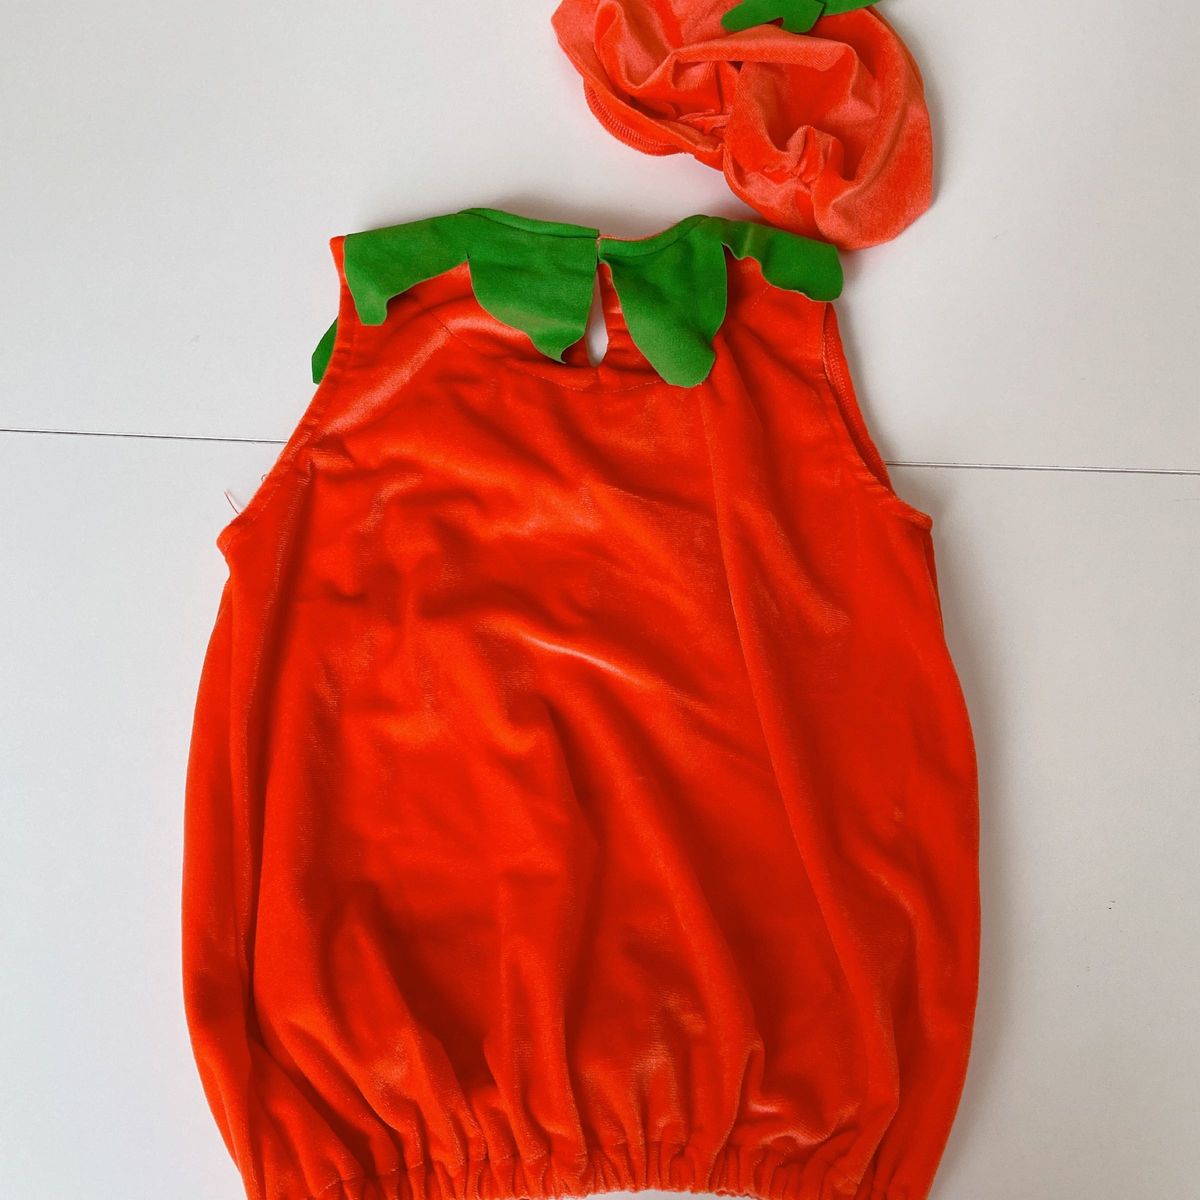 ハロウィン コスプレ 子供 かぼちゃ 仮装 女の子 男の子用 パンプキン キッズ コスチューム 着ぐるみ カボチャ衣装 可愛い 